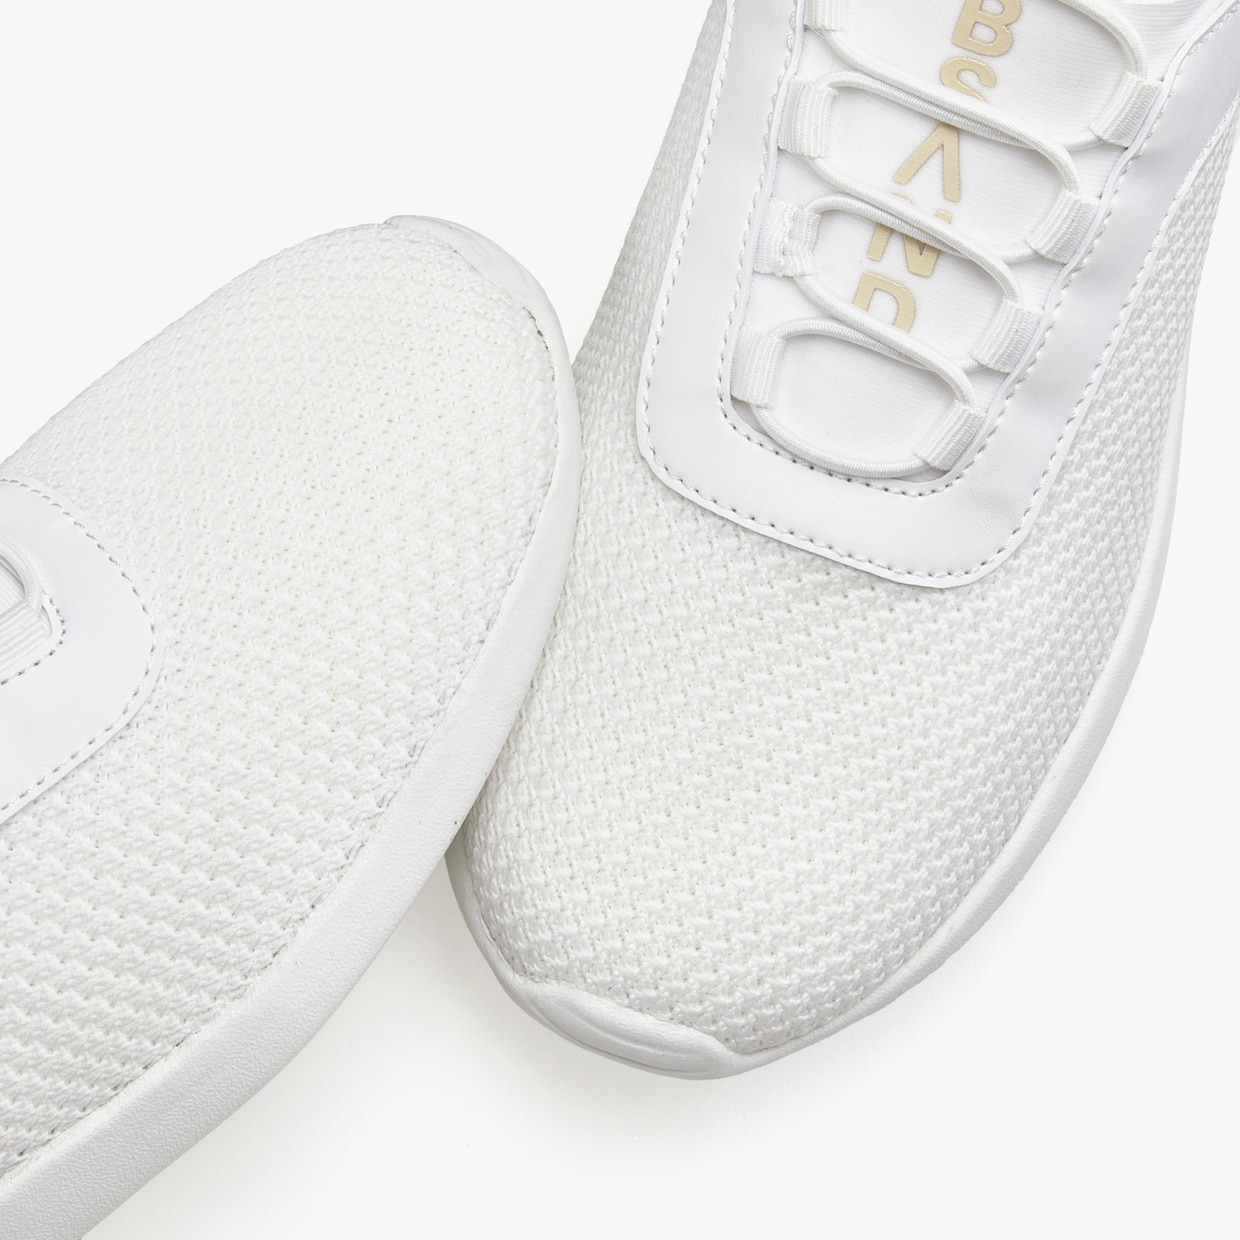 Elbsand Sneakers - blanc